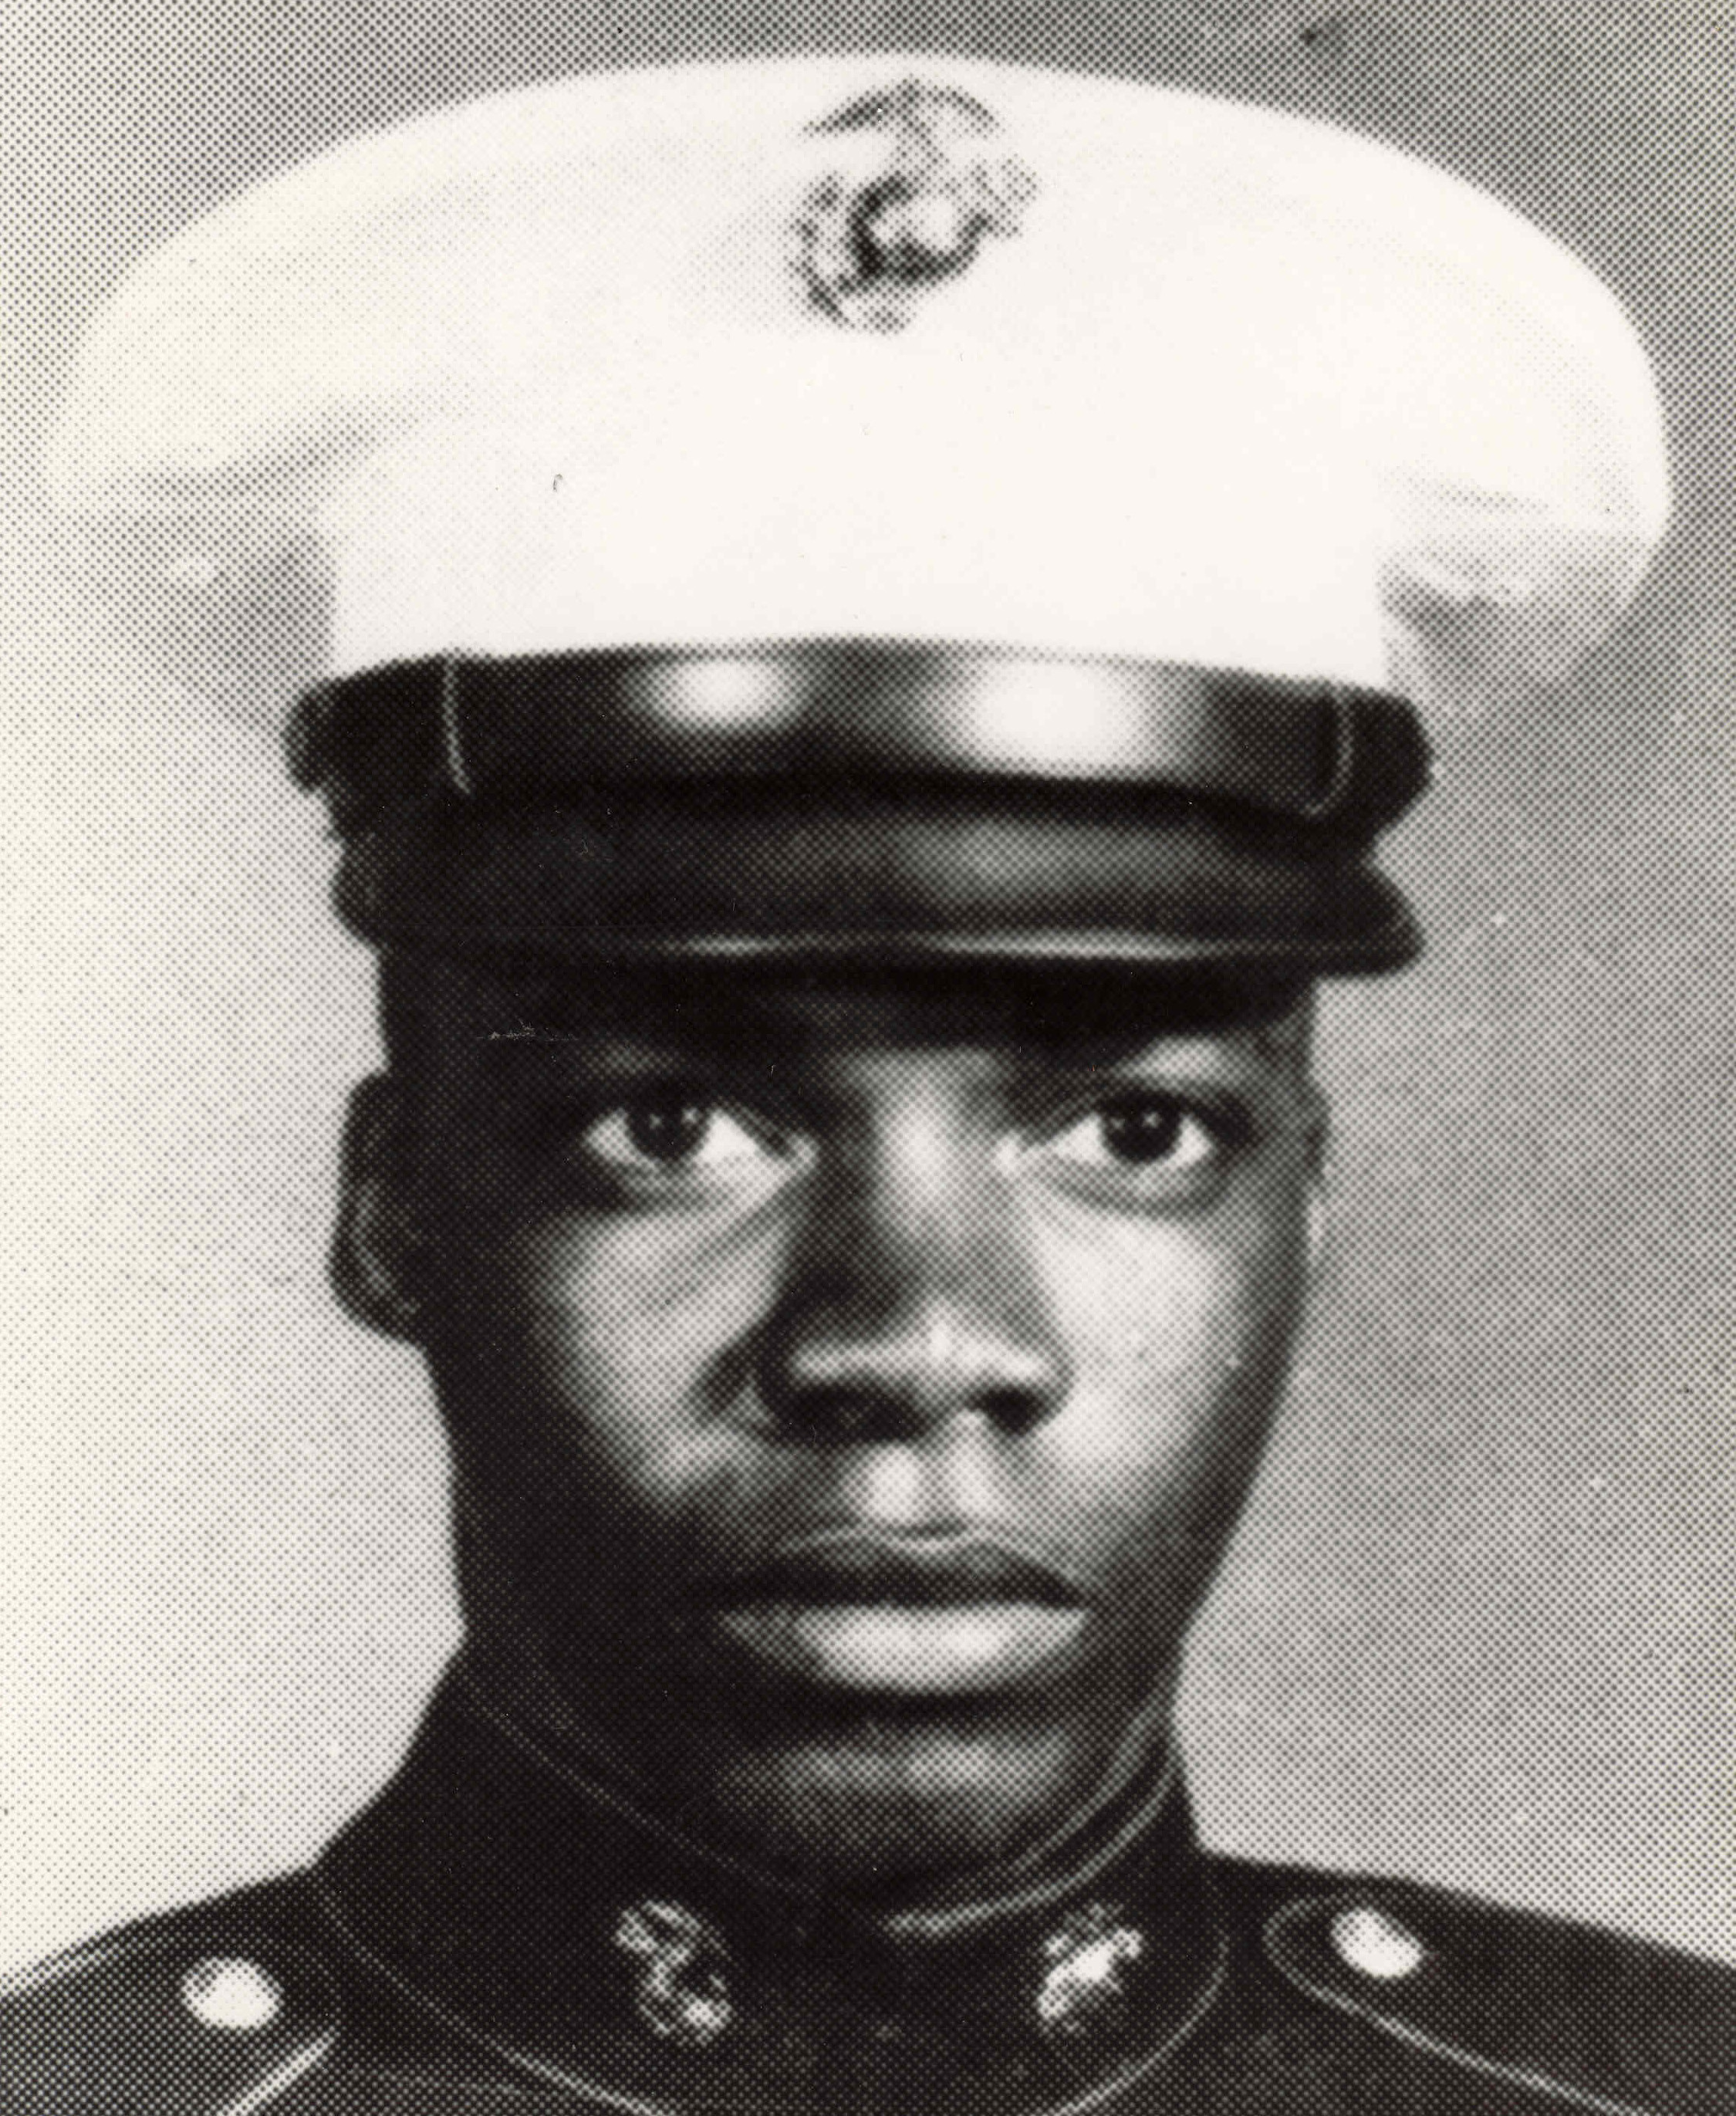 Medal of Honor Recipient Oscar P. Austin